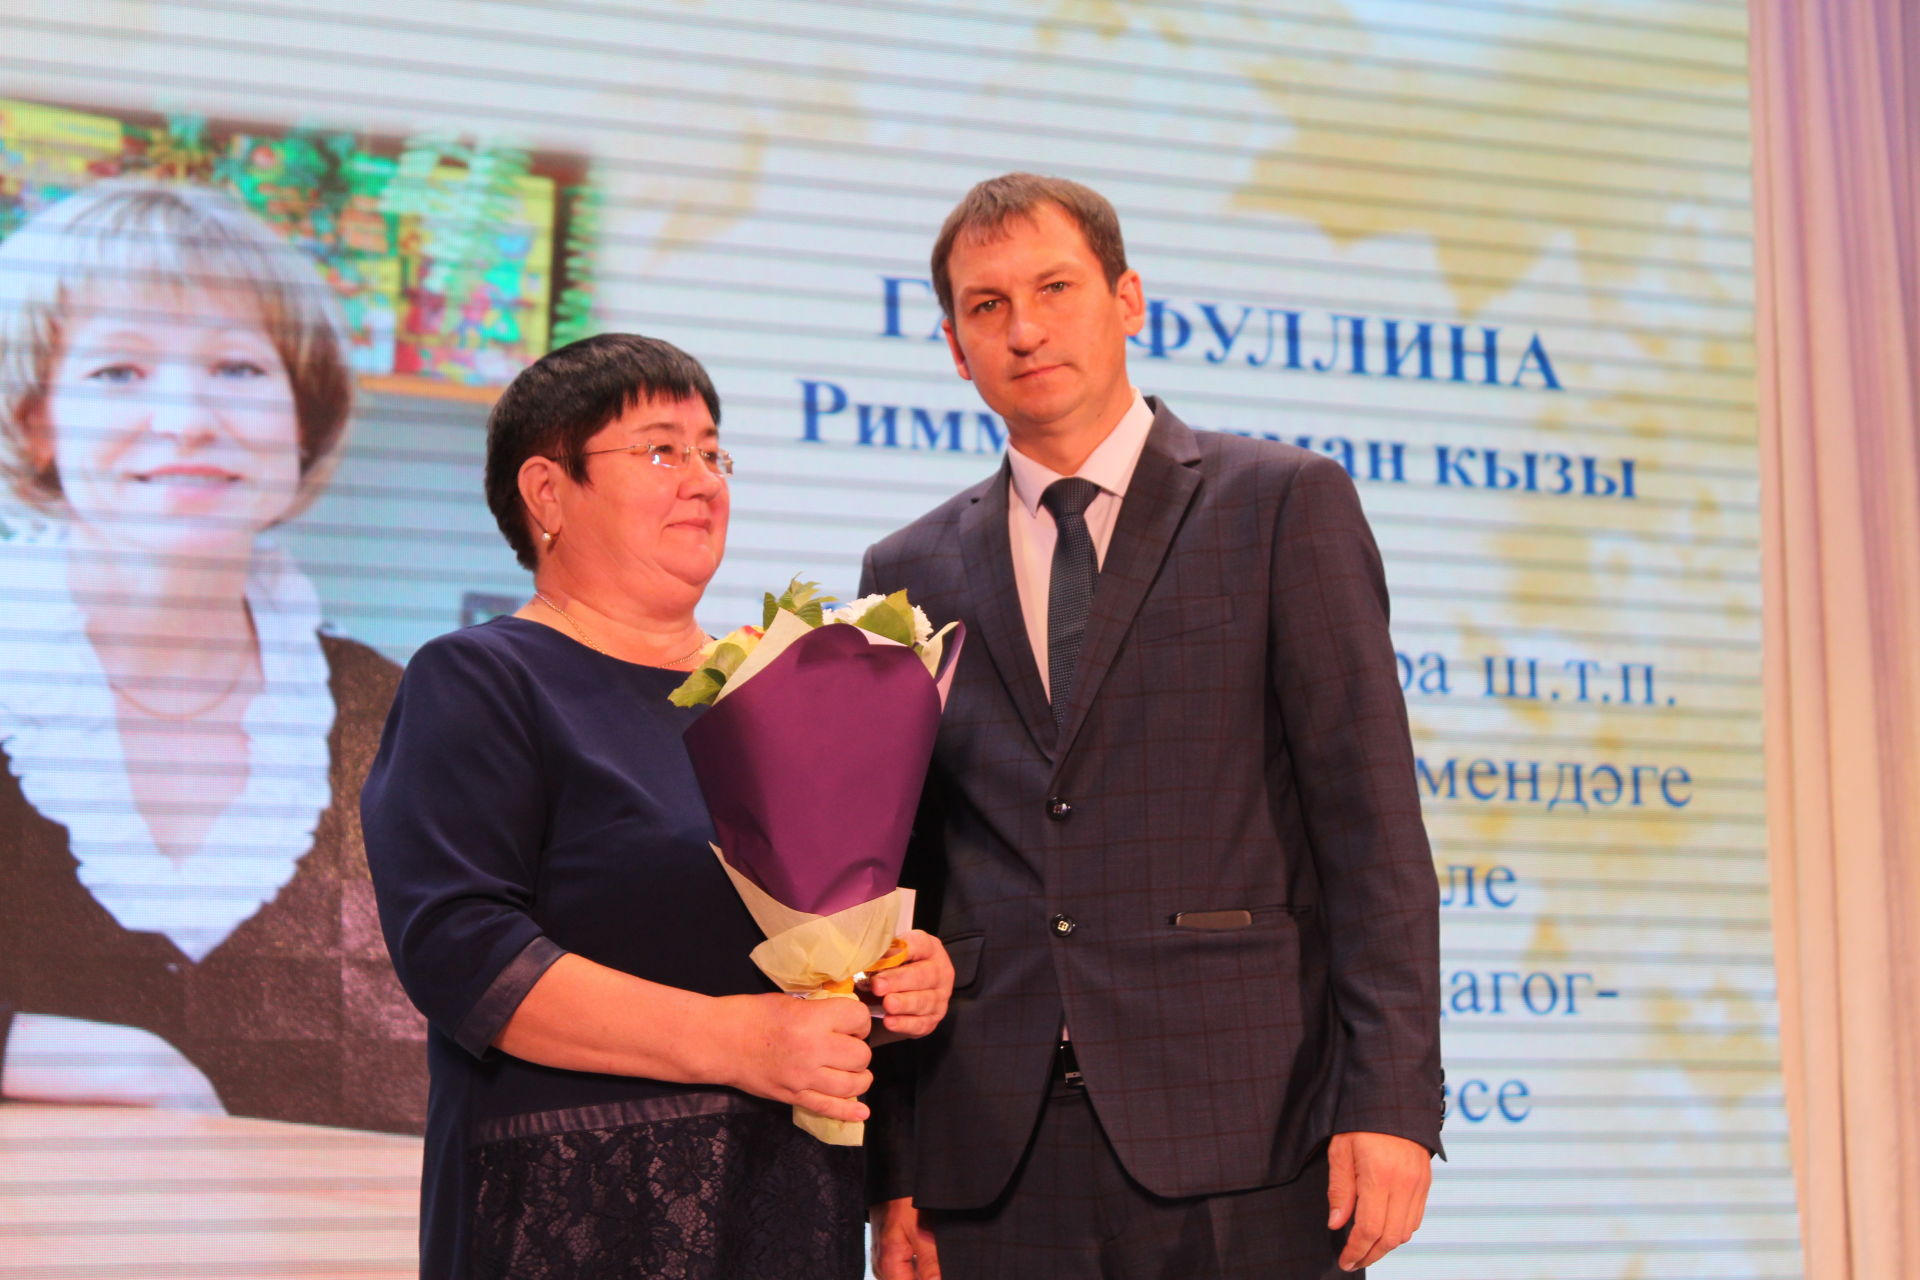 Сергей Димитриев: Работать учителем могут только те, у кого есть талант